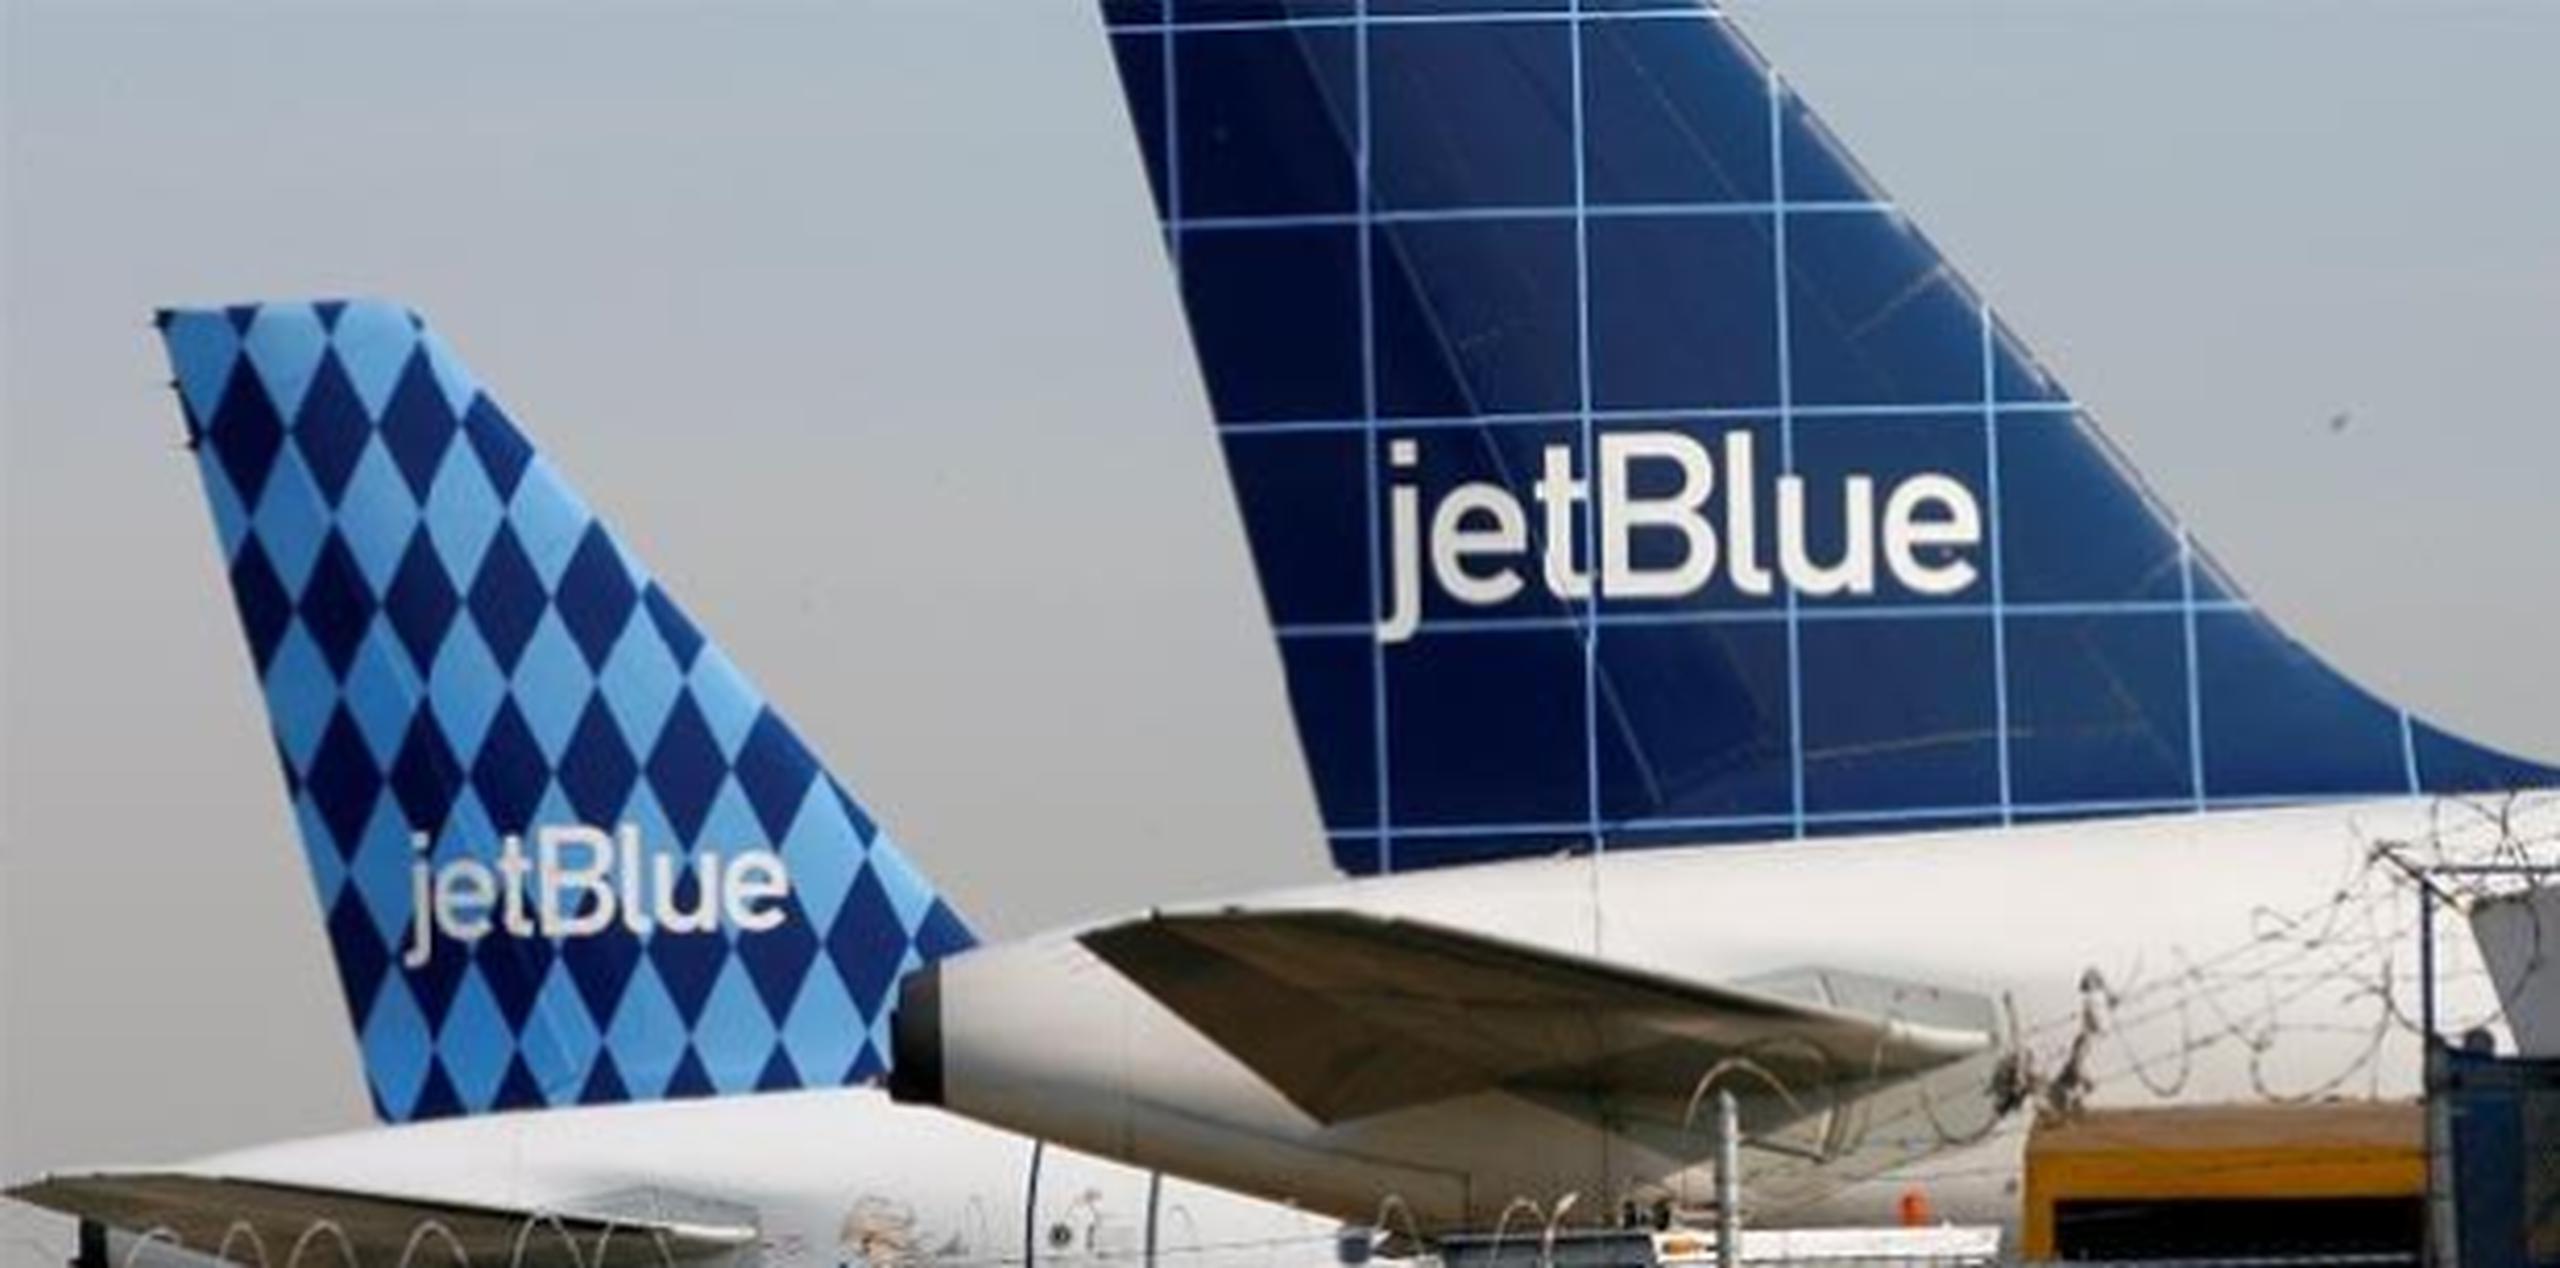 Ocho pasajeros fueron transportados a un hospital local para ser evaluados, informó un portavoz de JetBlue Airways. (Archivo)